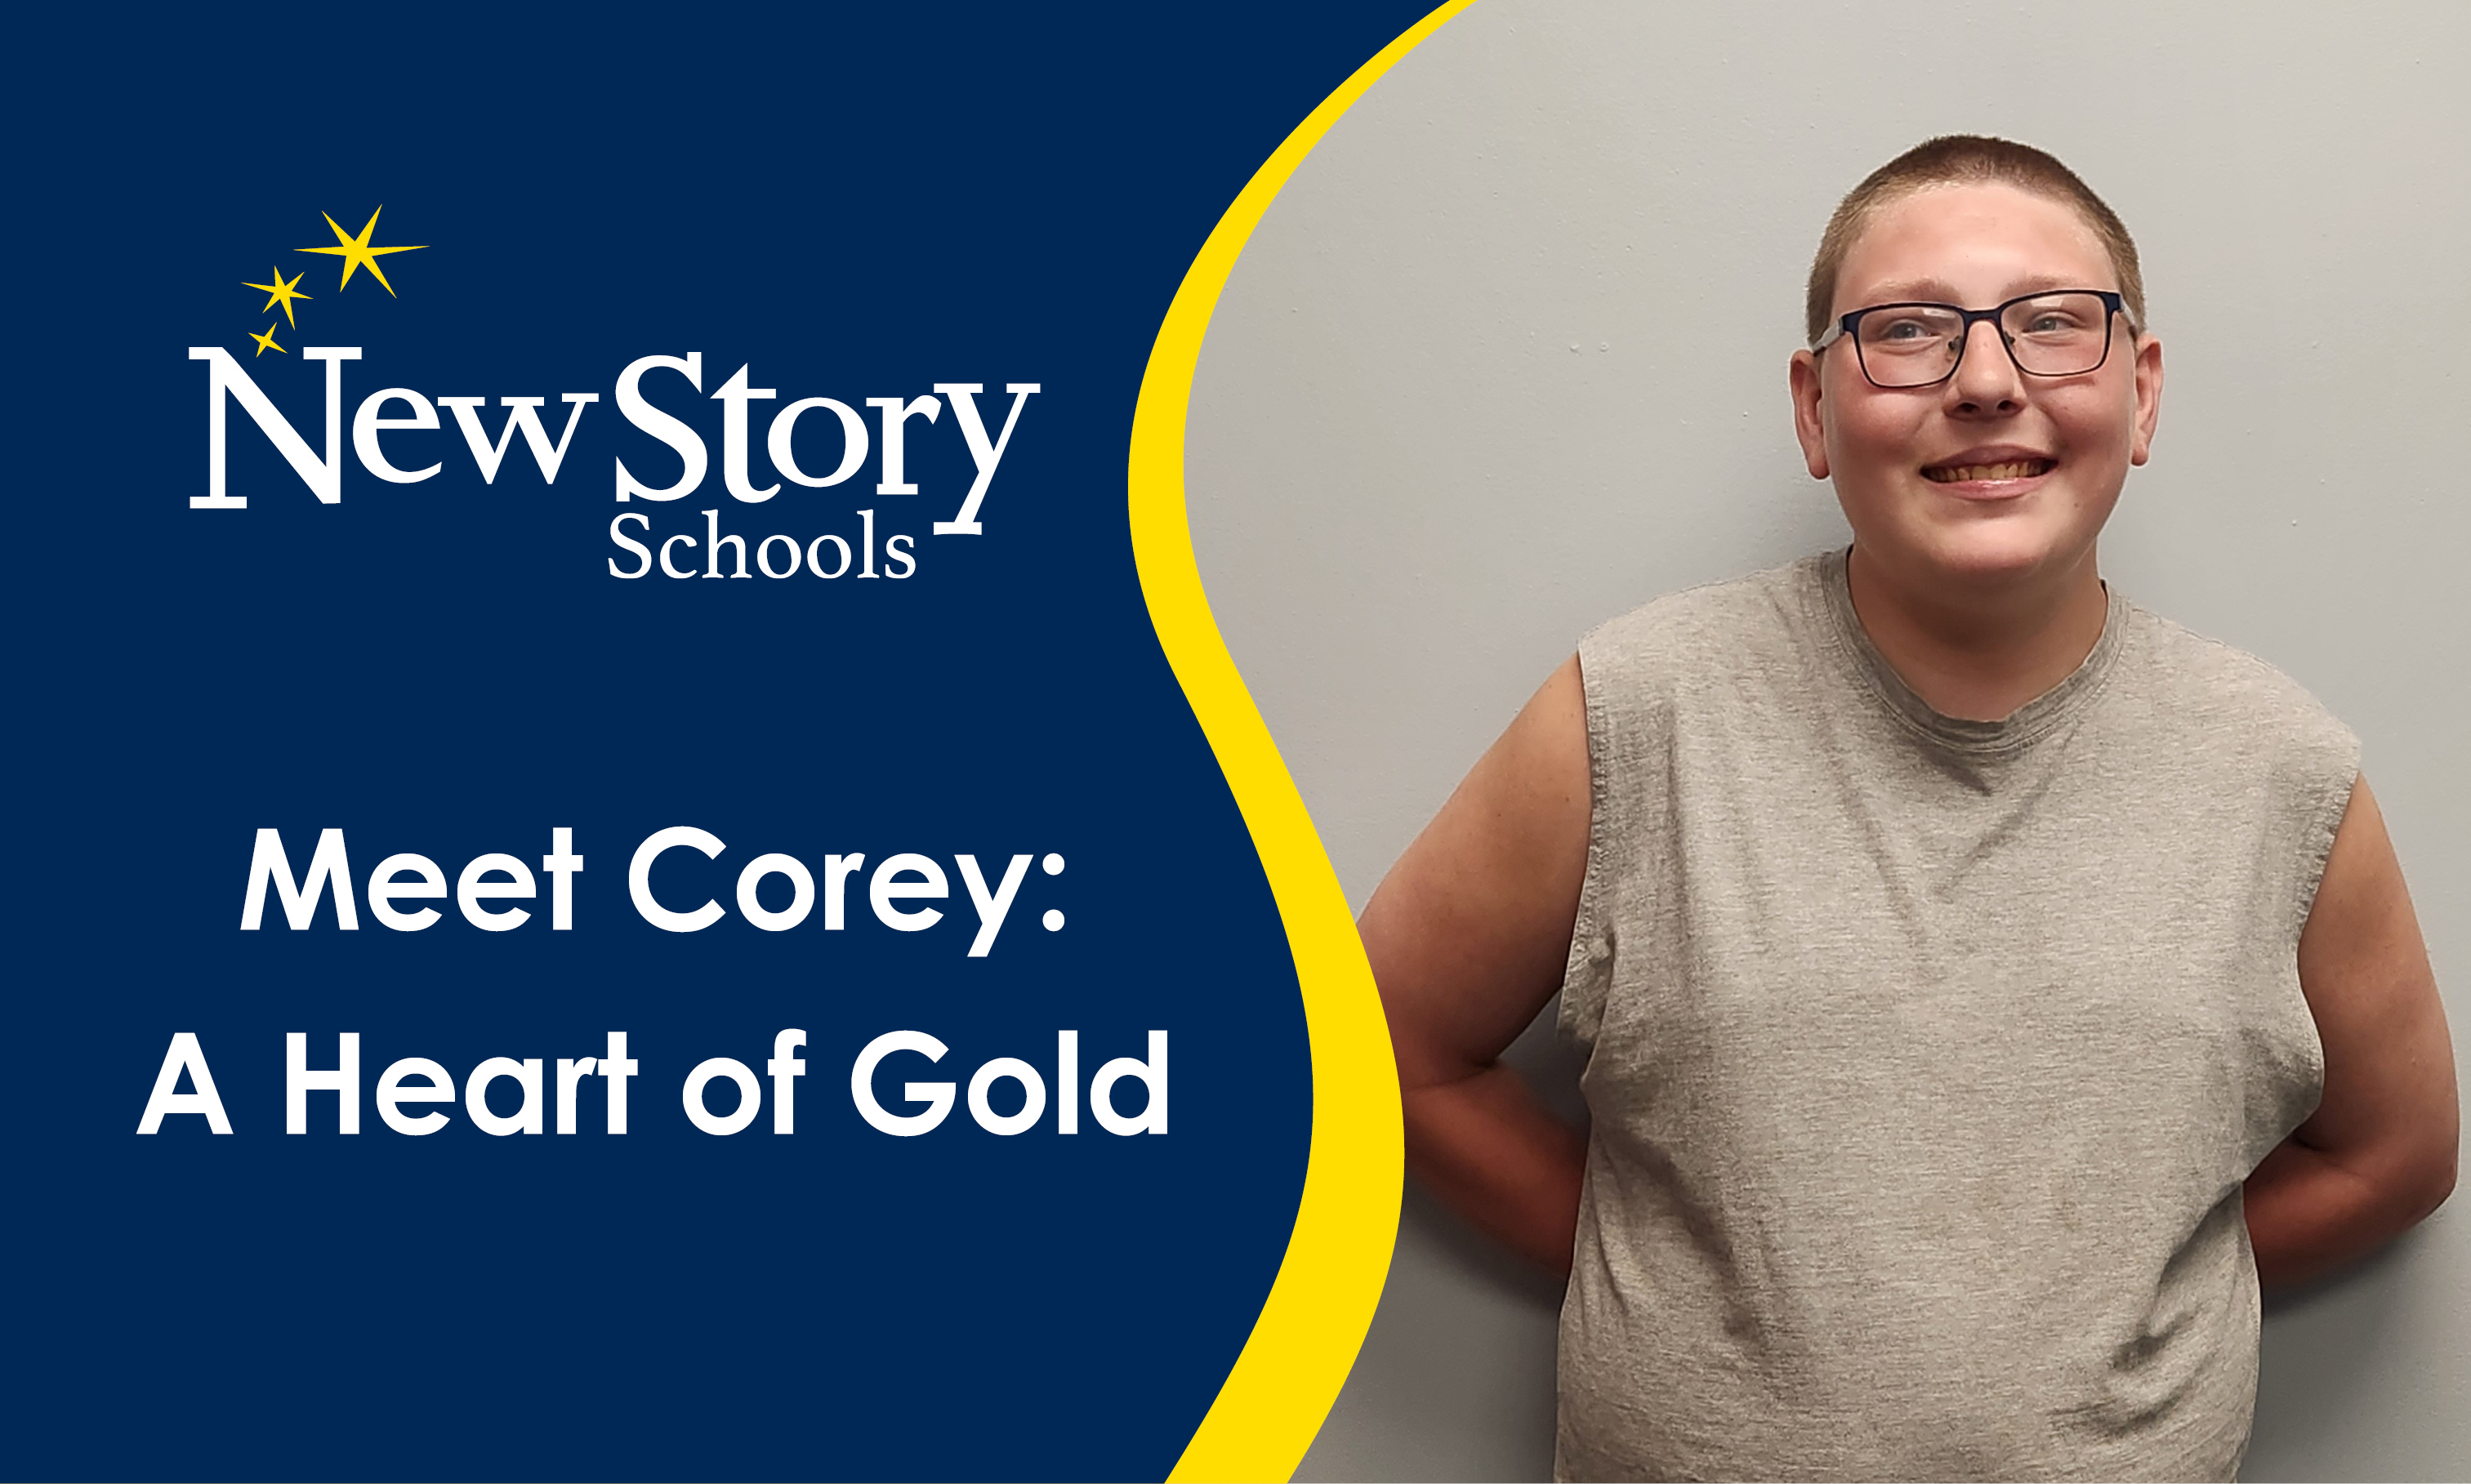 Meet Corey: A Heart of Gold